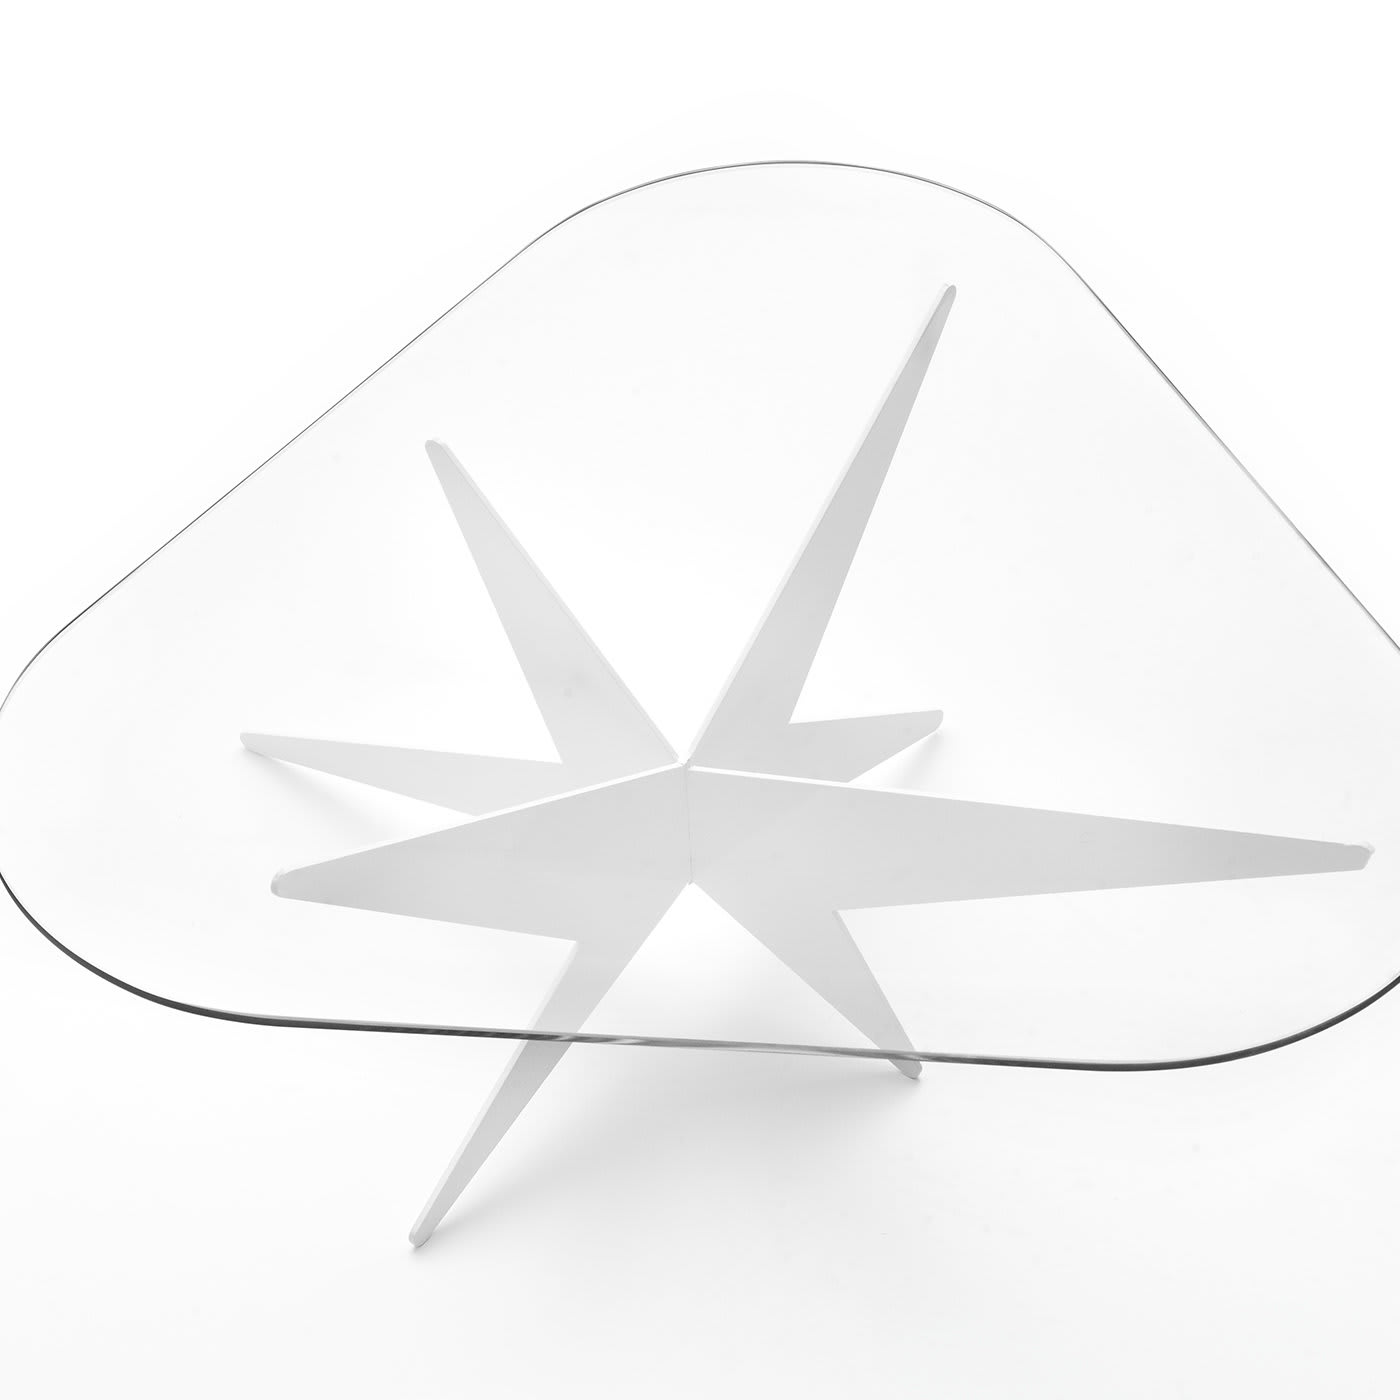 Star Triangular Coffee Table by Antonio Pio Saracino - Lamberti Design